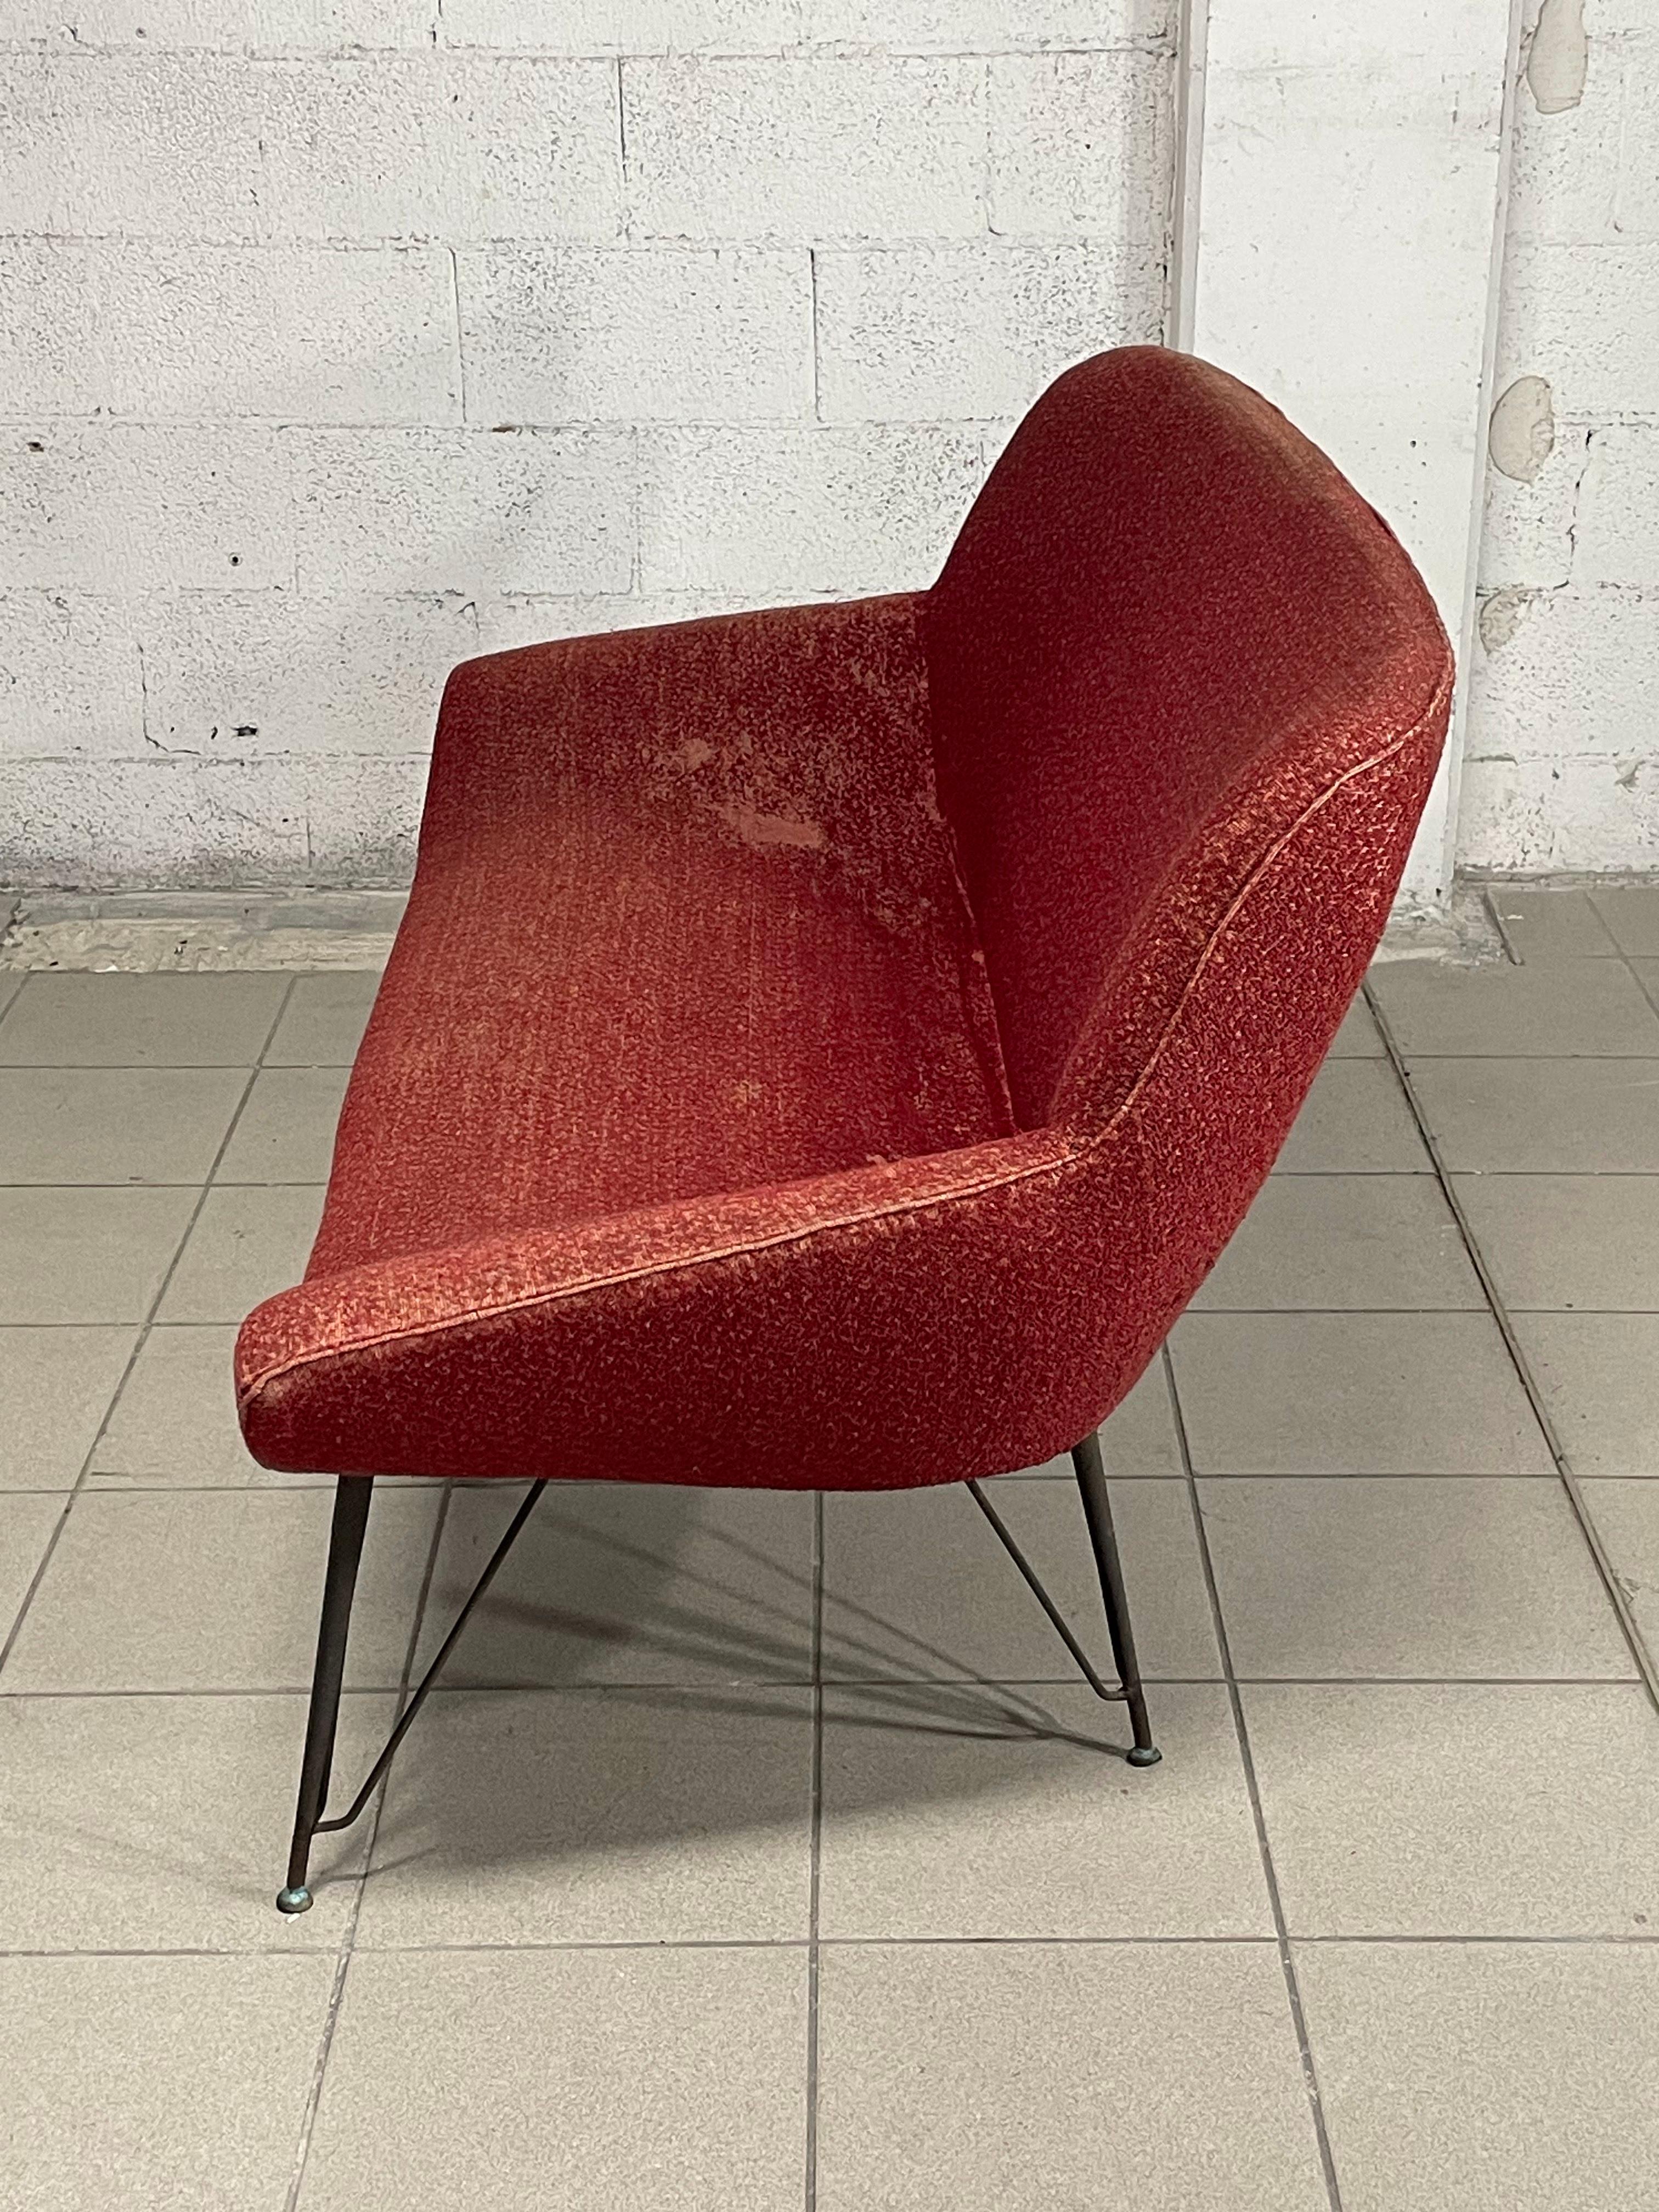 Canapé des années 1950 avec cadre en fer peint en noir et pieds en laiton.
Couverture originale en forme d'ours rouge.

Pour une meilleure performance de ce meuble, nous recommandons de remplacer le revêtement et le rembourrage.